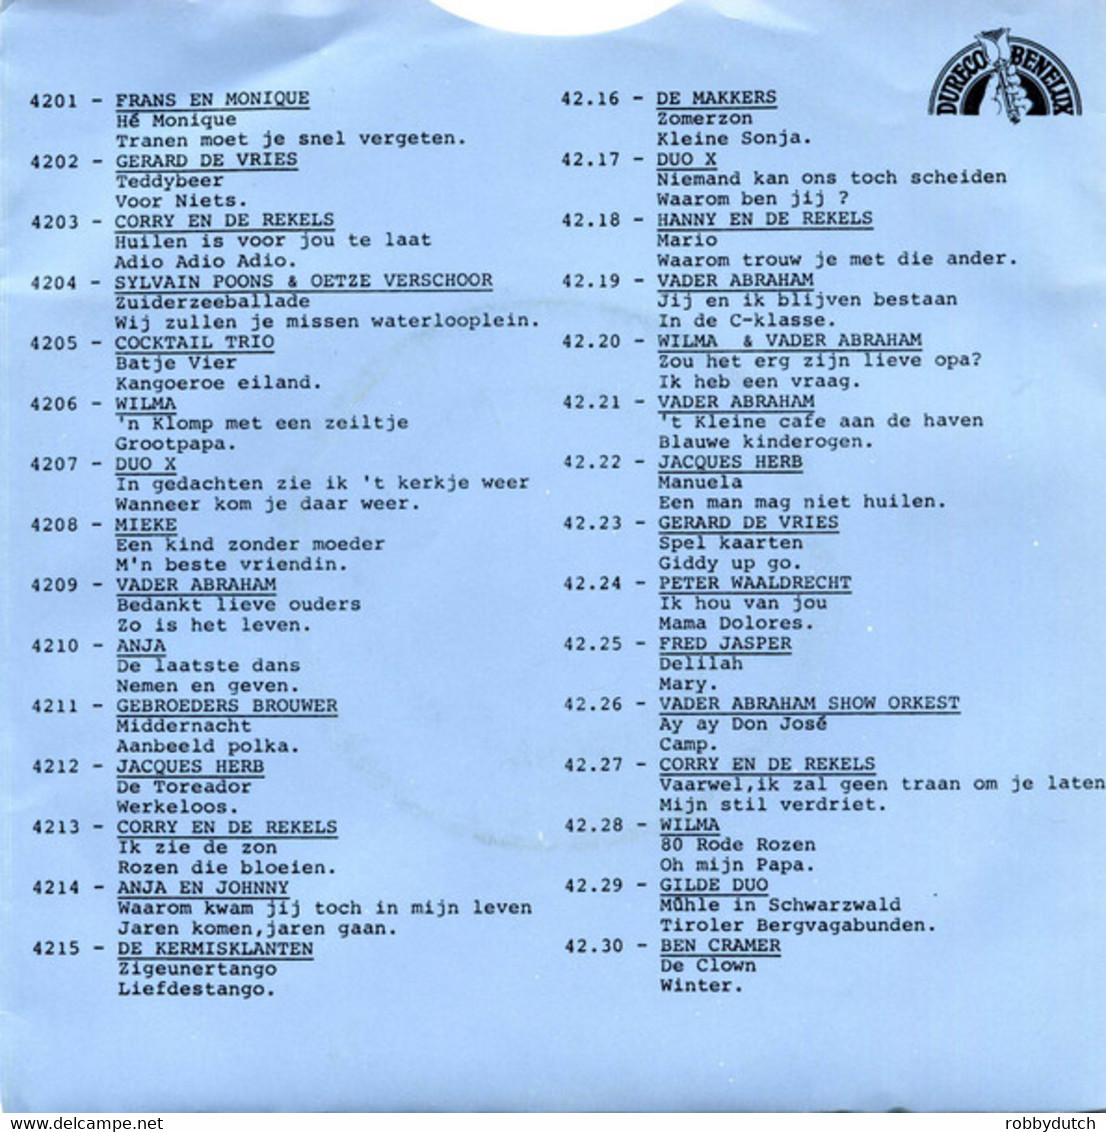 *7" * GERARD DE VRIES - SPEL KAARTEN (Holland 1976) - Sonstige - Niederländische Musik